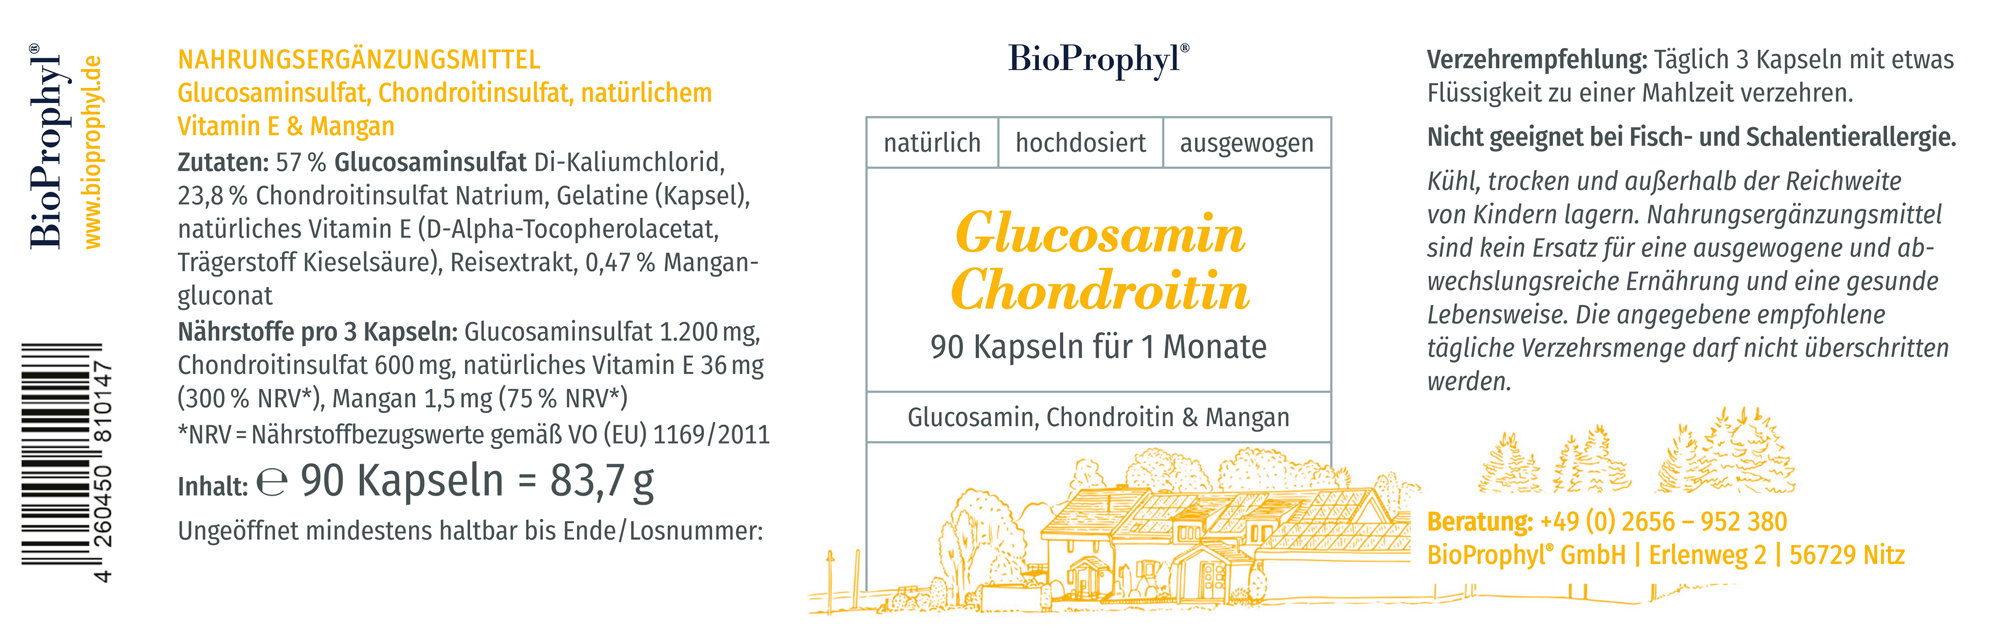 Produktetikett von Glucosamin-Chondroitin